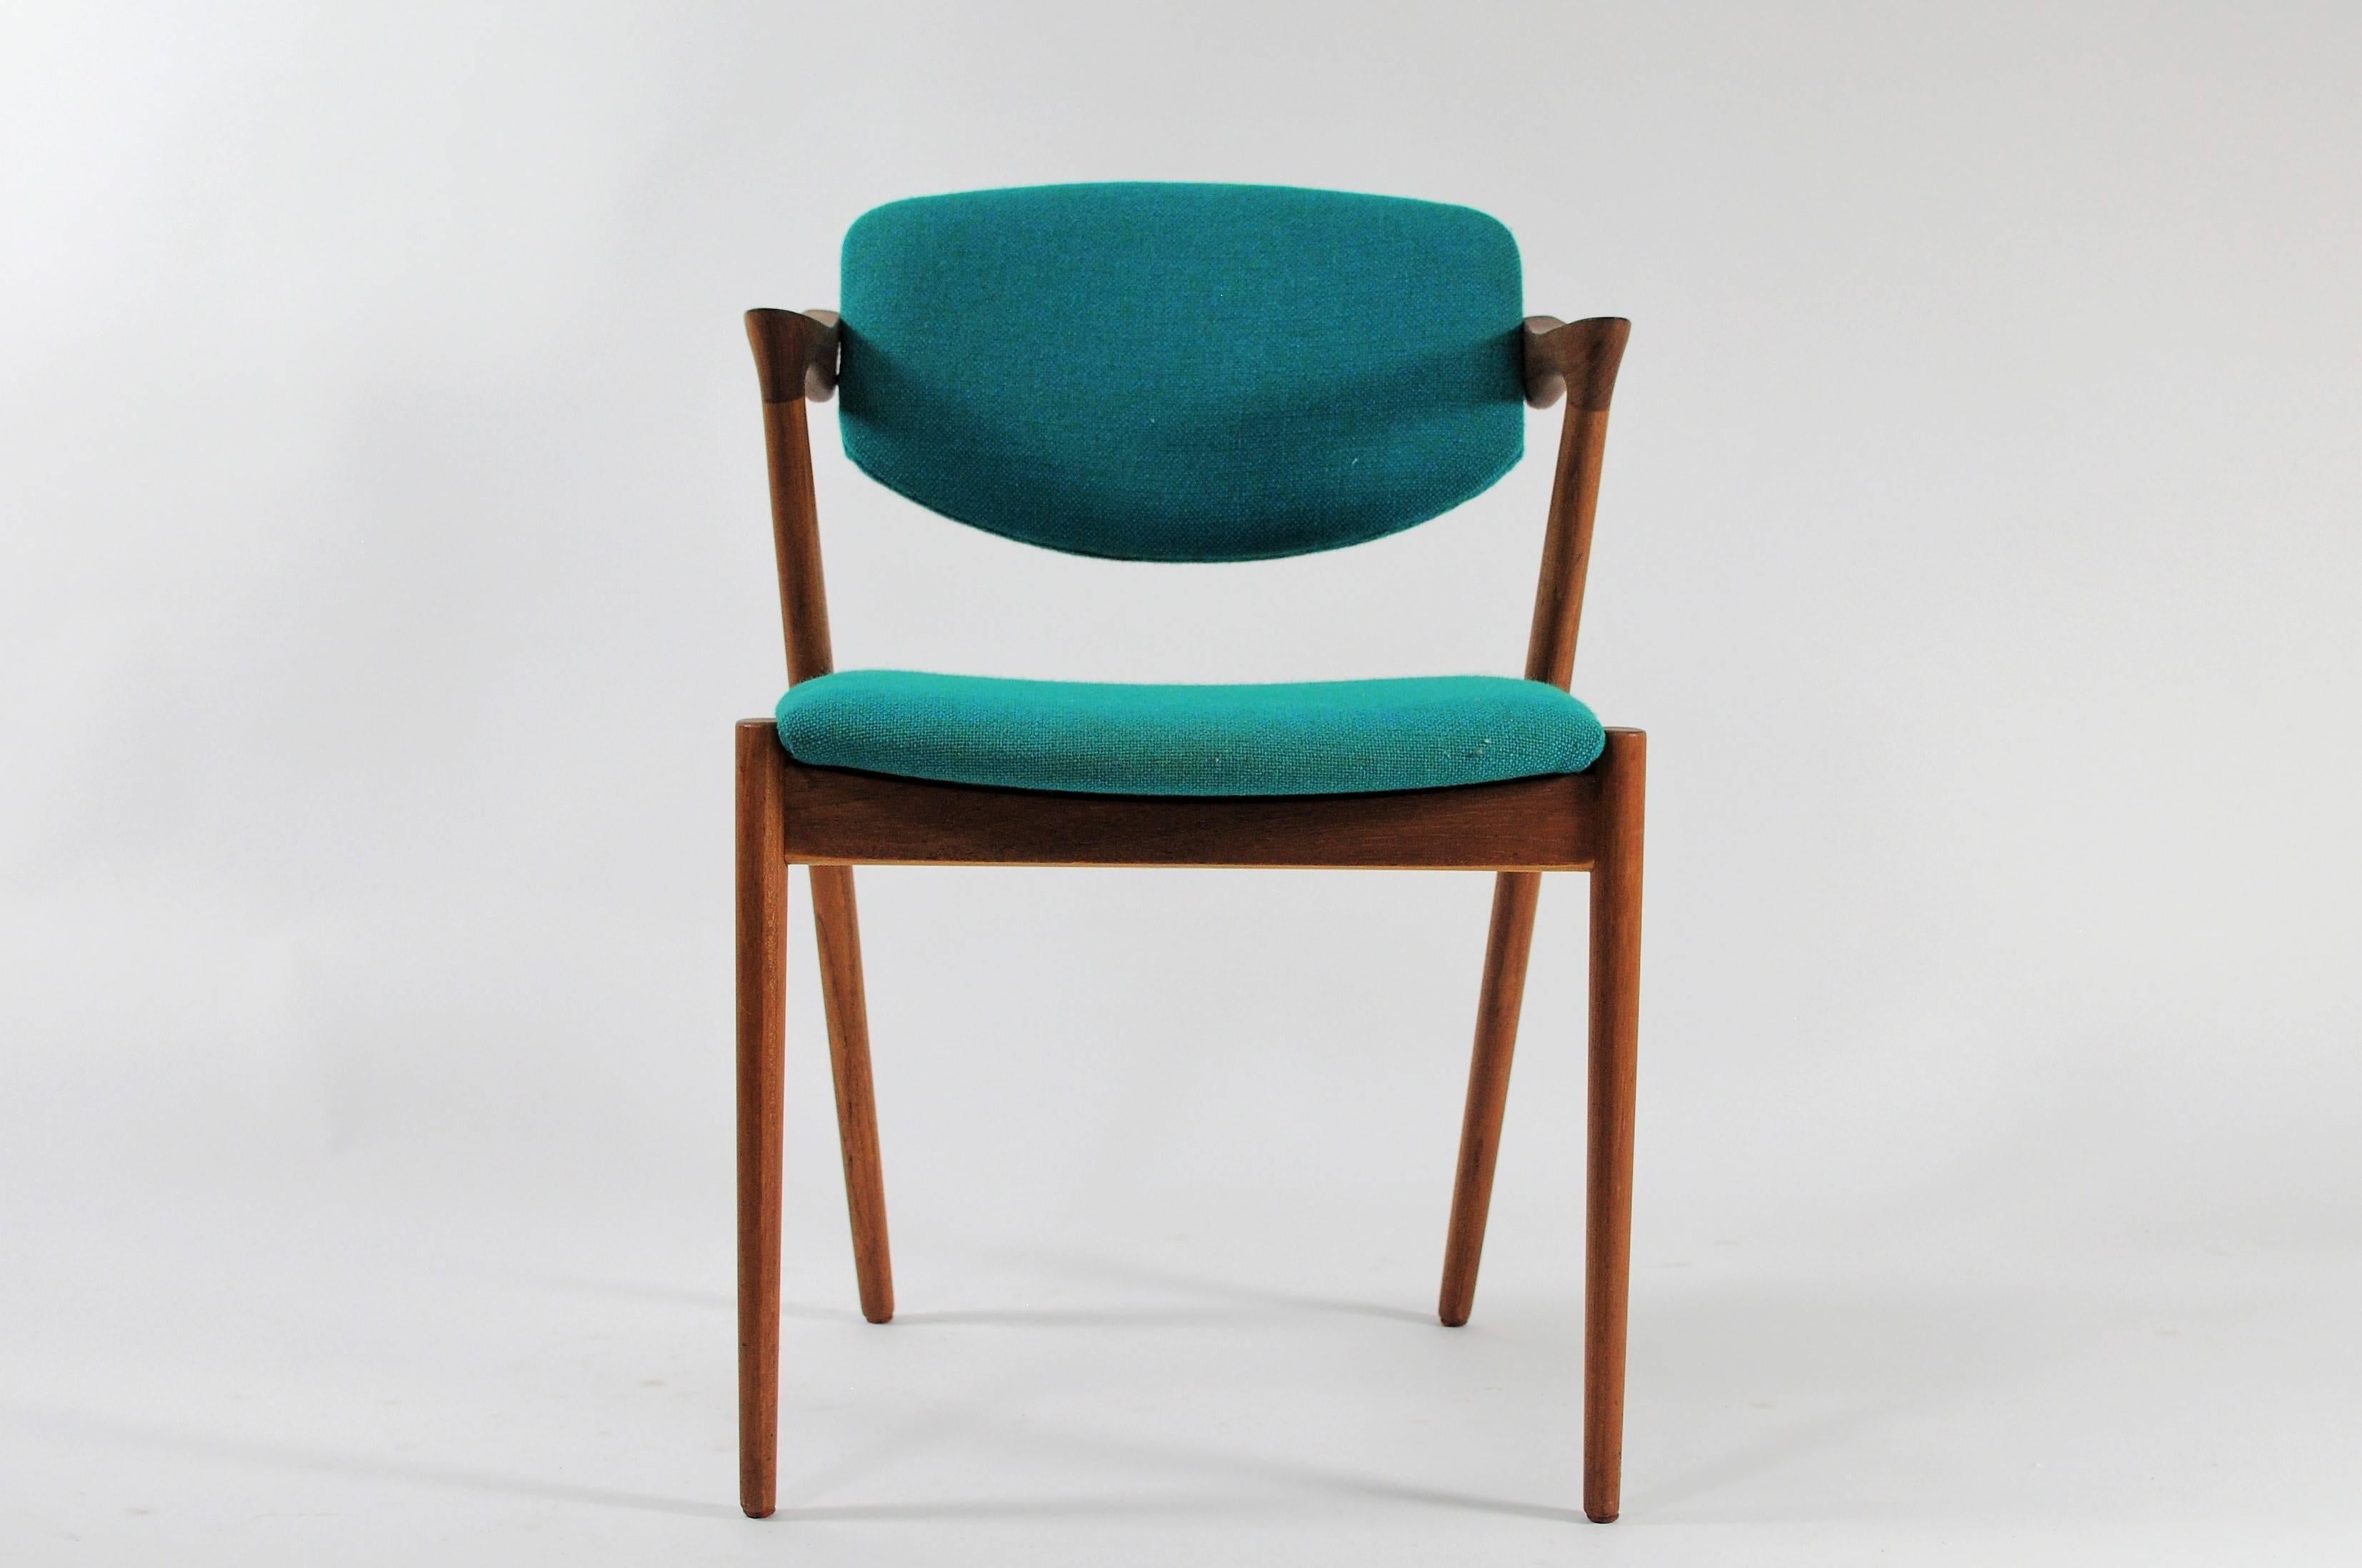 Ensemble de six chaises de salle à manger originales en teck des années 1960, entièrement restaurées, par Kai Kristiansen pour Schous Møbelfabrik.

Les chaises ont le design léger et élégant typique de Kai Kristiansens, qui leur permet de s'intégrer